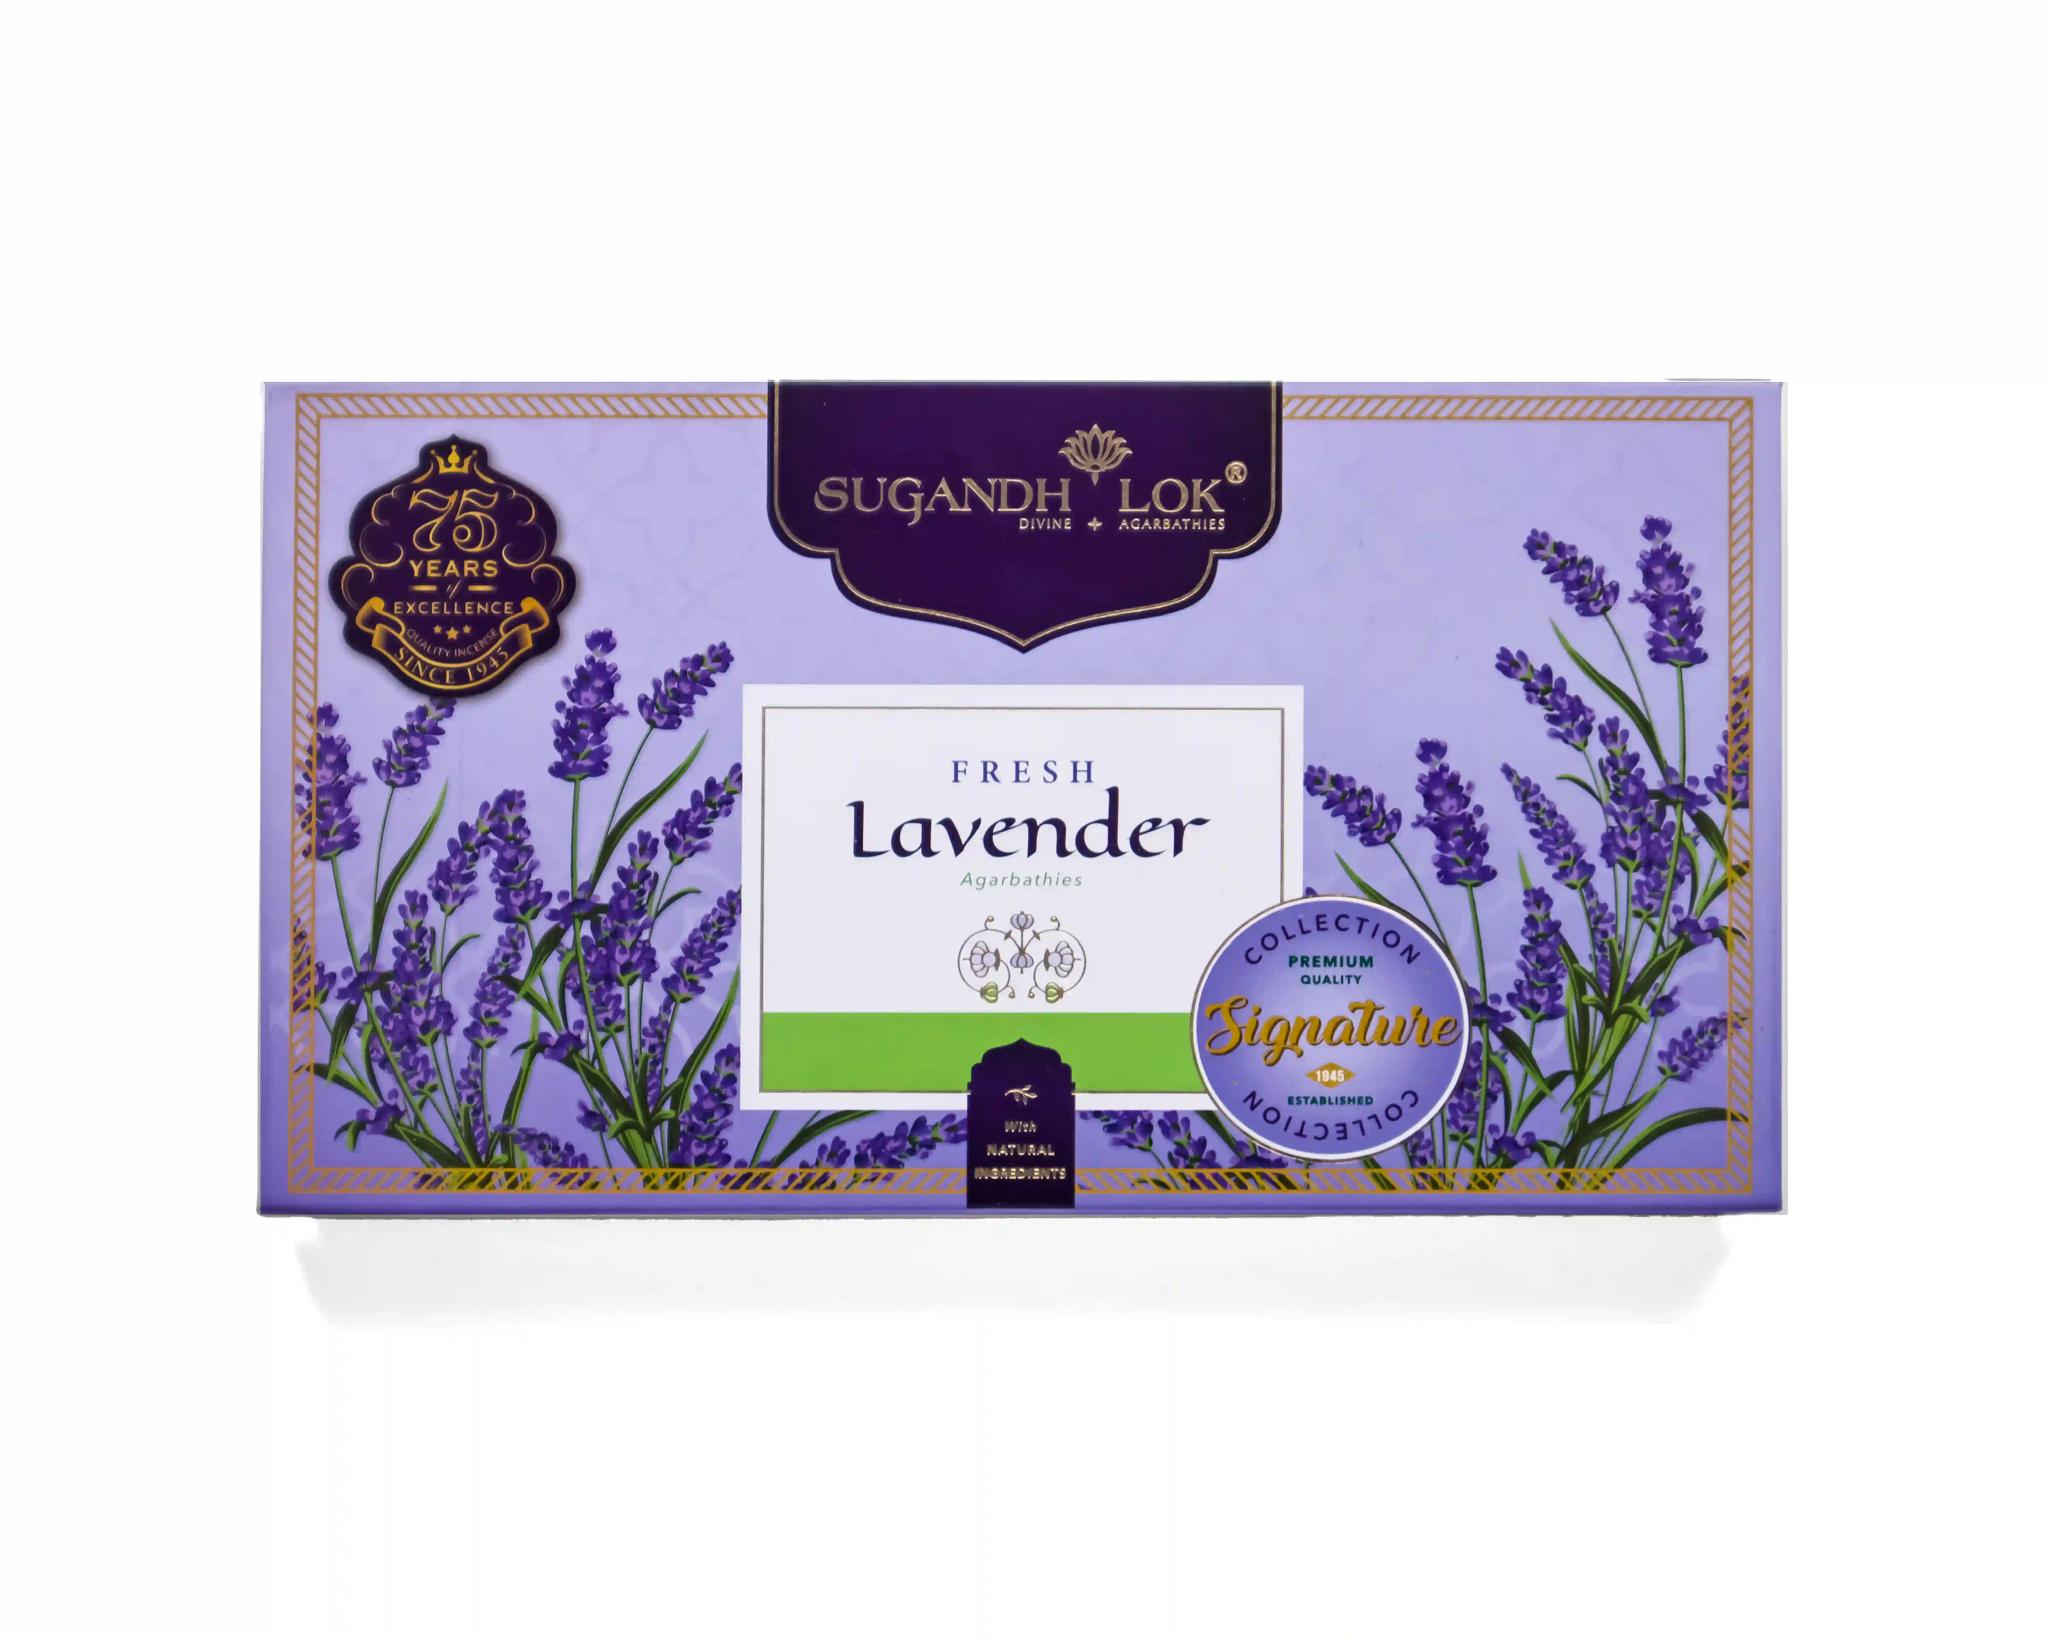 Signature Collection Fresh Lavender Premium Agarbathies